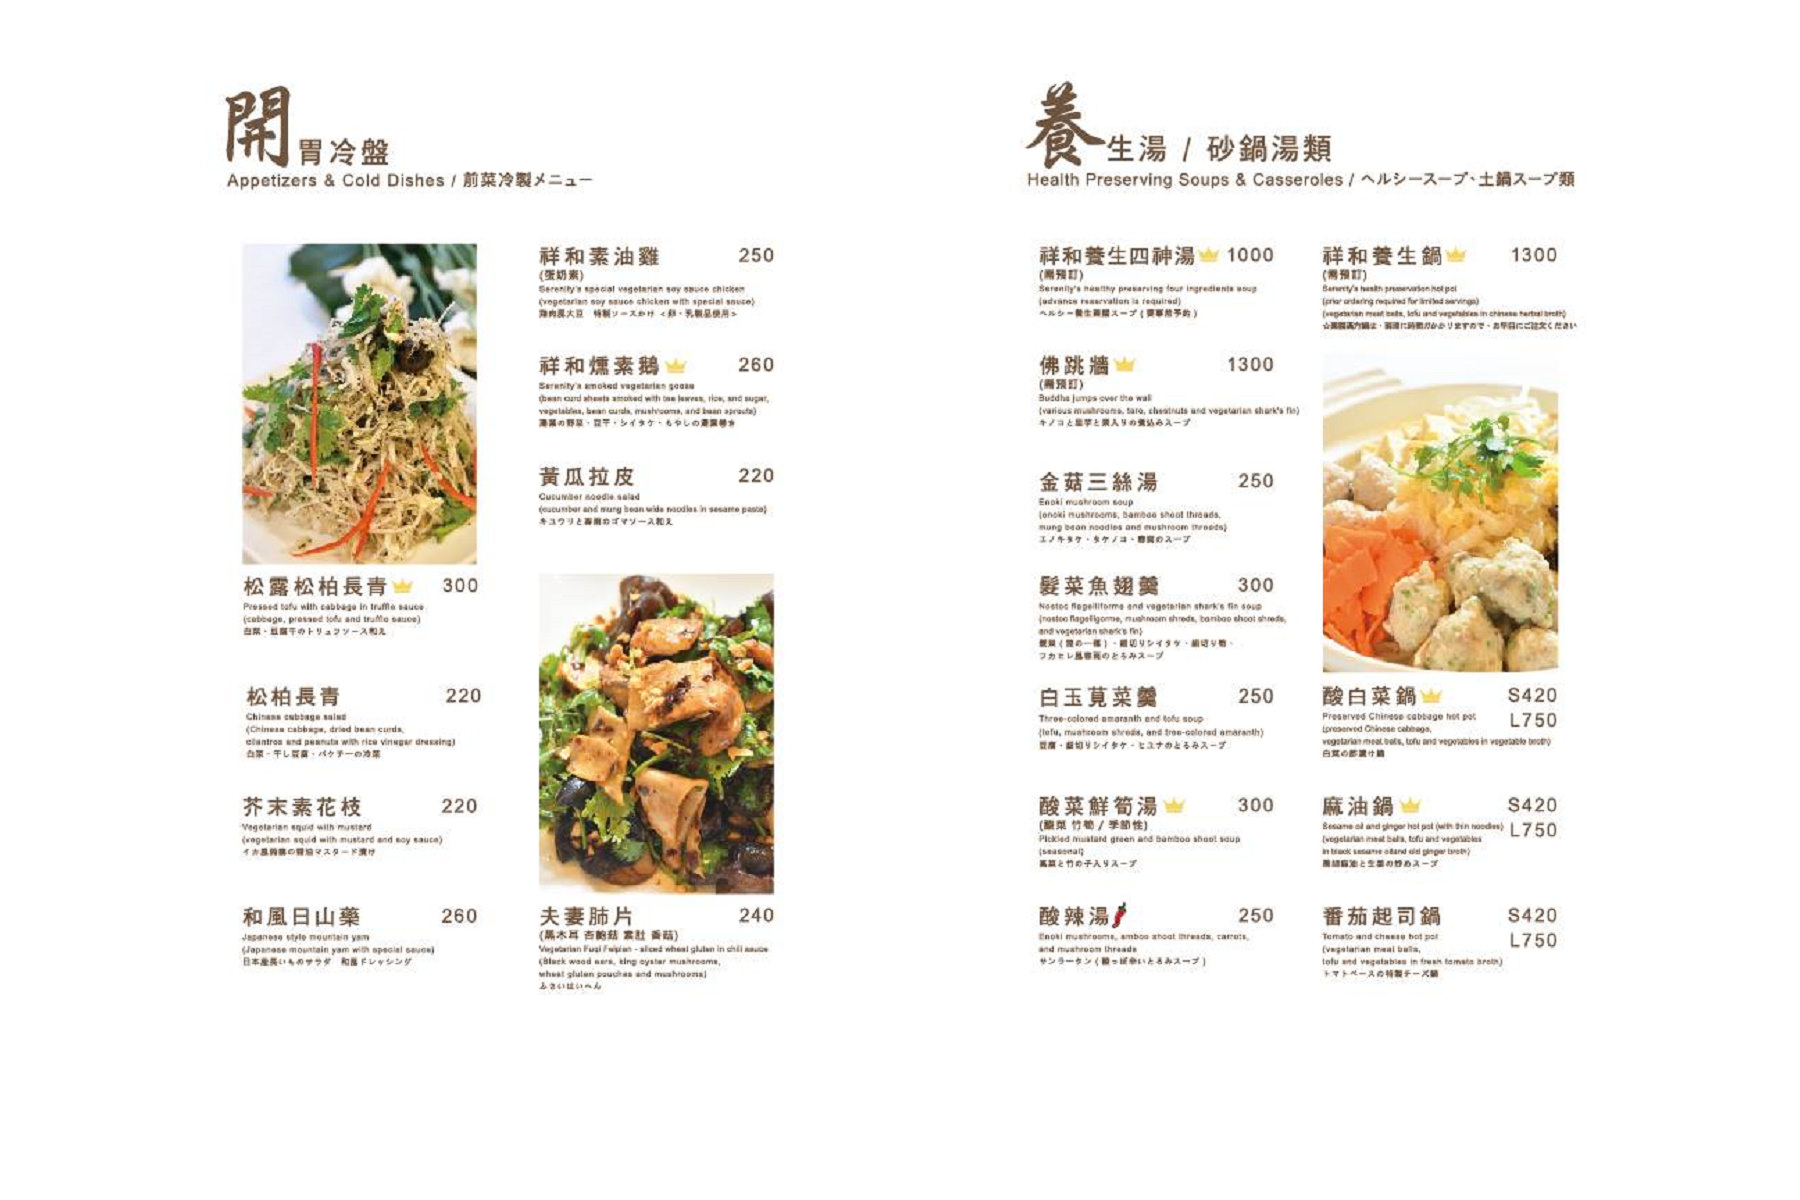 台北餐廳,台北素食,台北素食推薦,米其林推薦,米其林餐廳推薦,米其林素食,素食推薦,祥和蔬食精緻料理,祥和素食